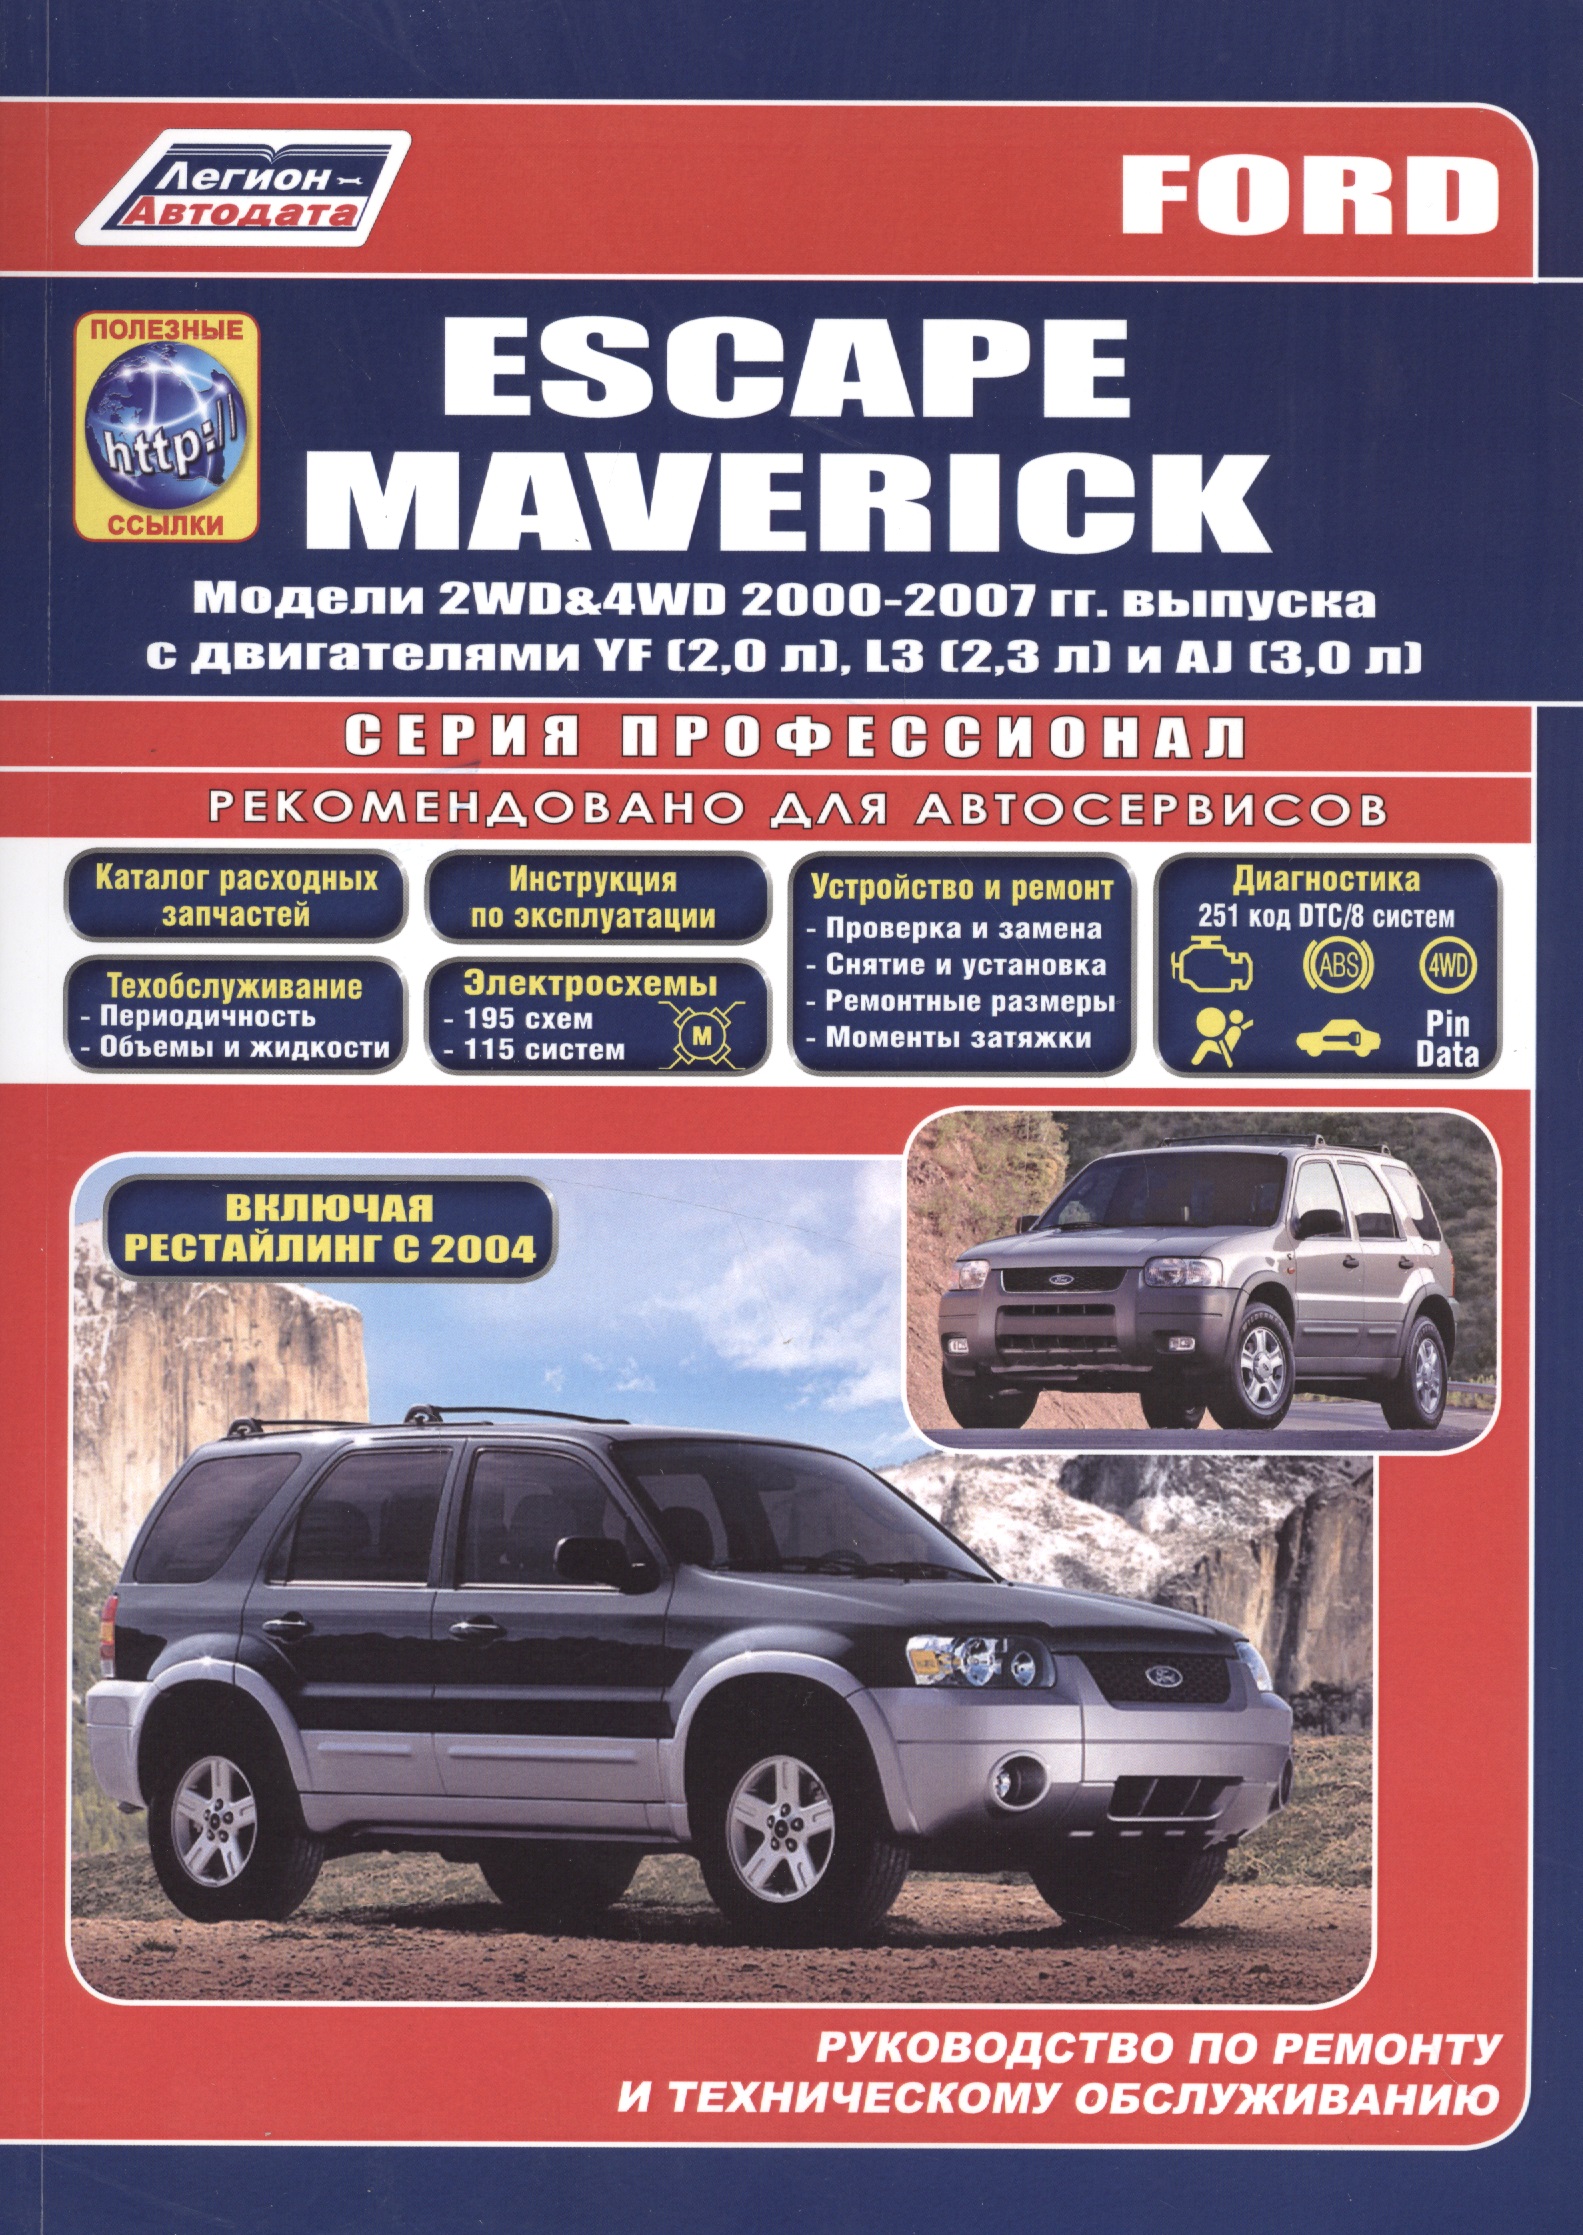 Ford Escape Maverick.  2WD&4WD 2000-2007 .    YF (2, 0 .), L3 (2, 3 .), AJ (3, 0 .).     2004 .       (+  )